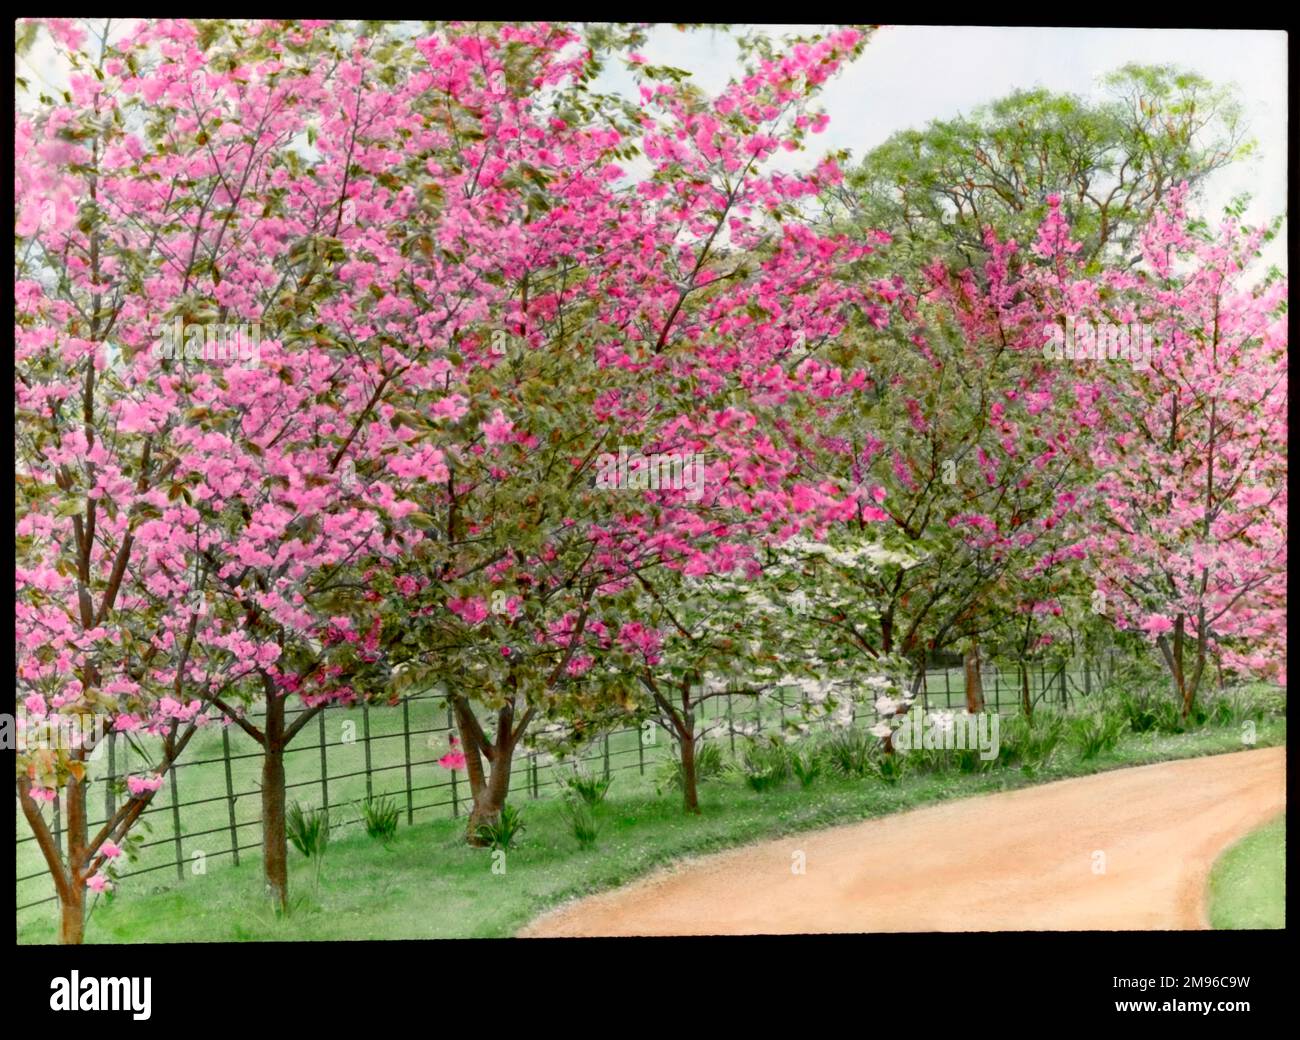 Prunus (cerezo floreciente), varios árboles plantados a lo largo de un camino, cargados de flores rosadas en diferentes tonos. Foto de stock